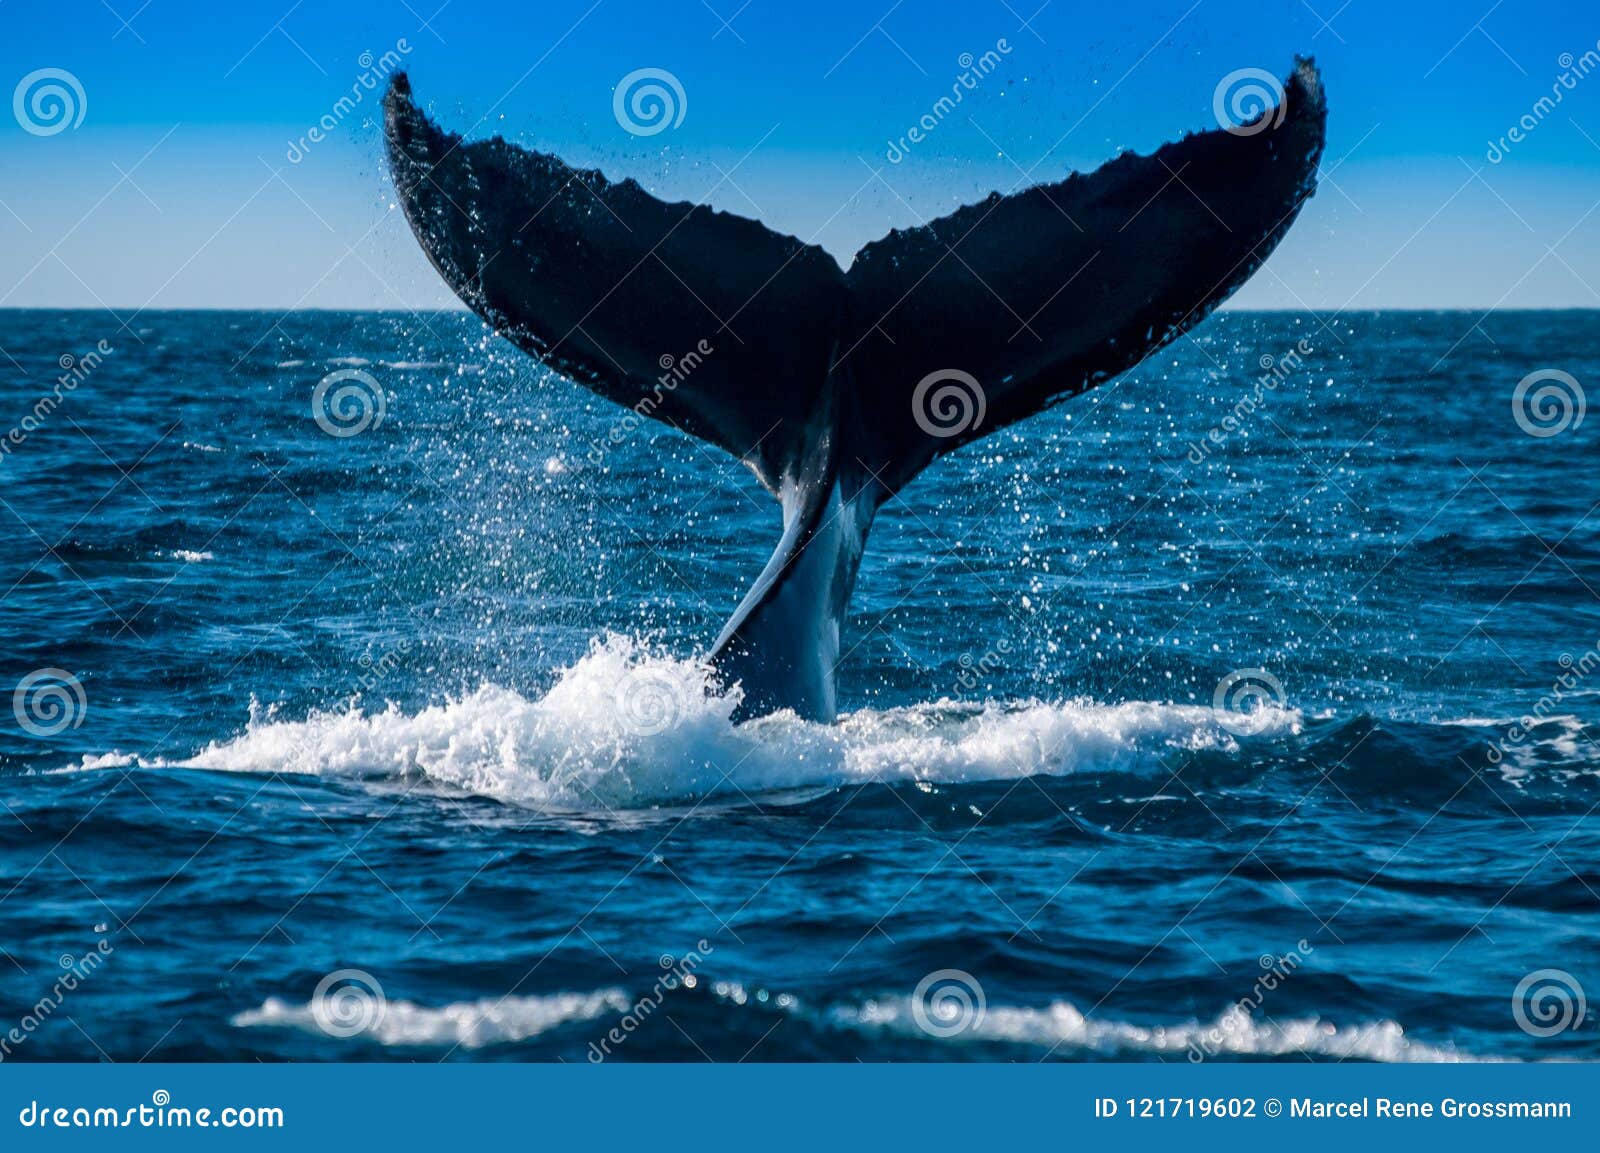 在下潜昆士兰澳大利亚的驼背鲸. 驼背鲸Megaptera novaeangliae是须鲸类的种类 一更大的rorqual种类，成人长度从12â€范围“16米39â€ “52 ft并且称大约36,000公斤79,000 lb